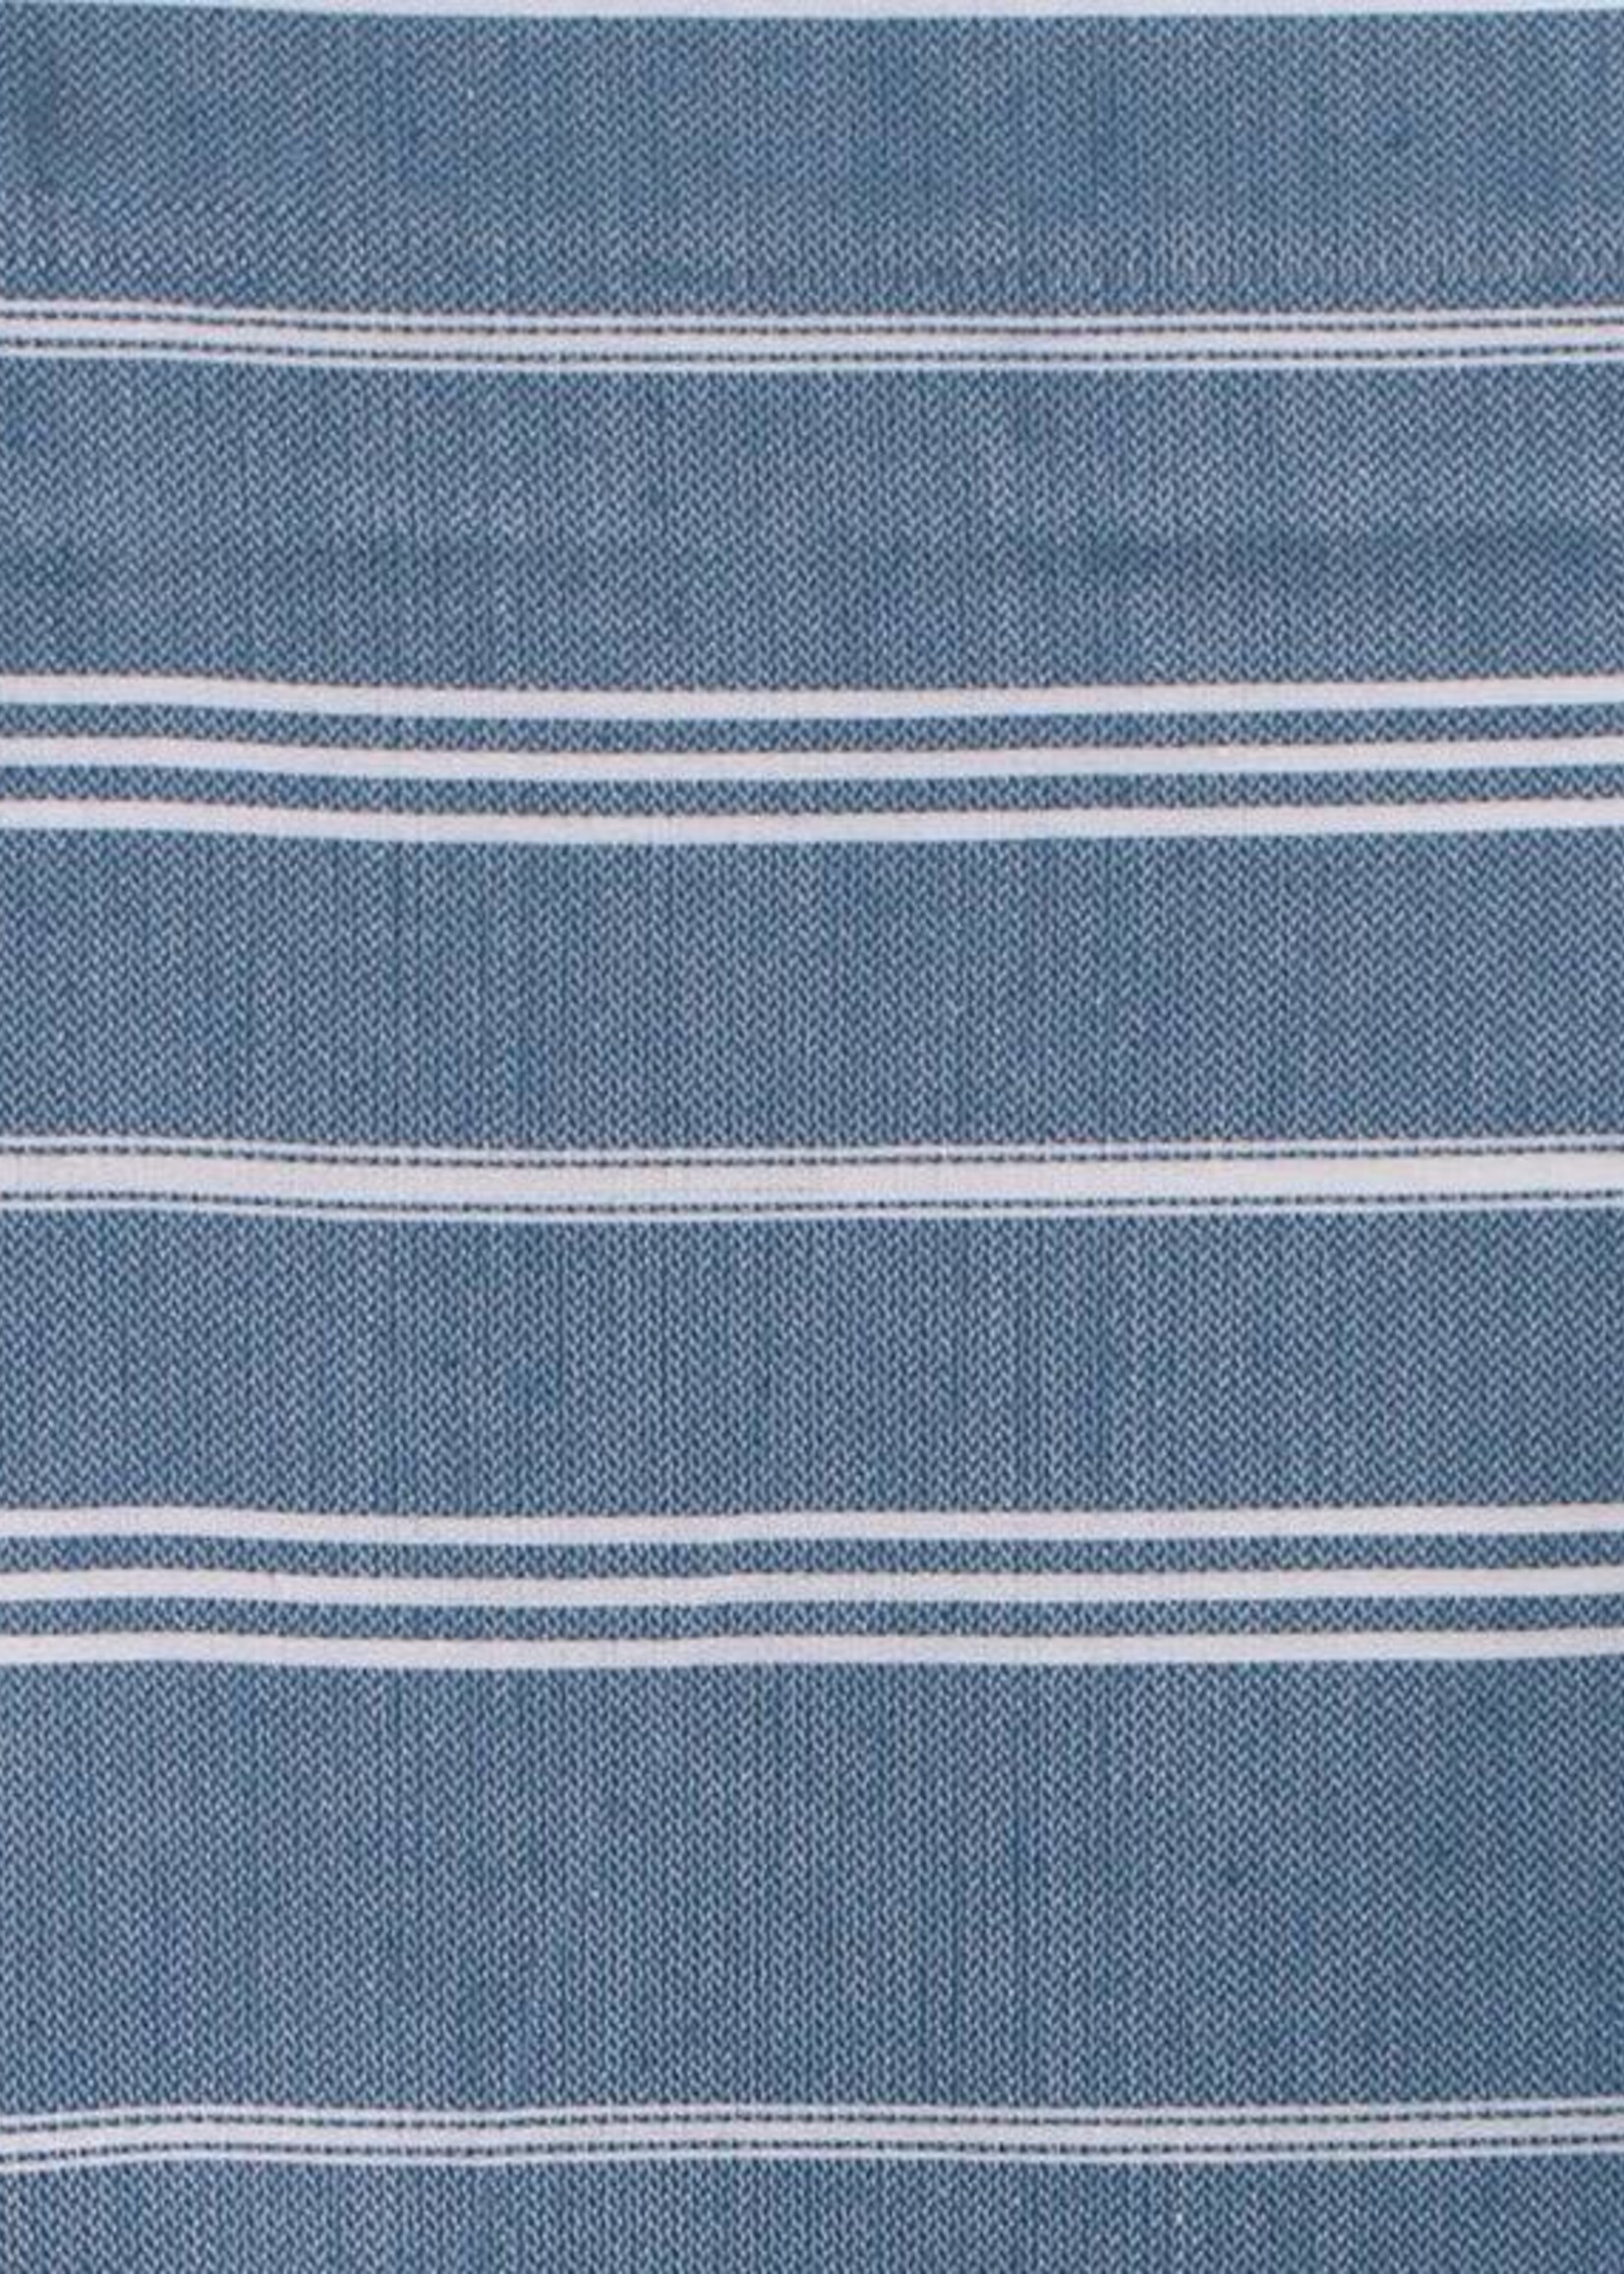 Ottomania hammam handdoek Ottomania 50x100cm jeansblauw - kleine hamamdoek